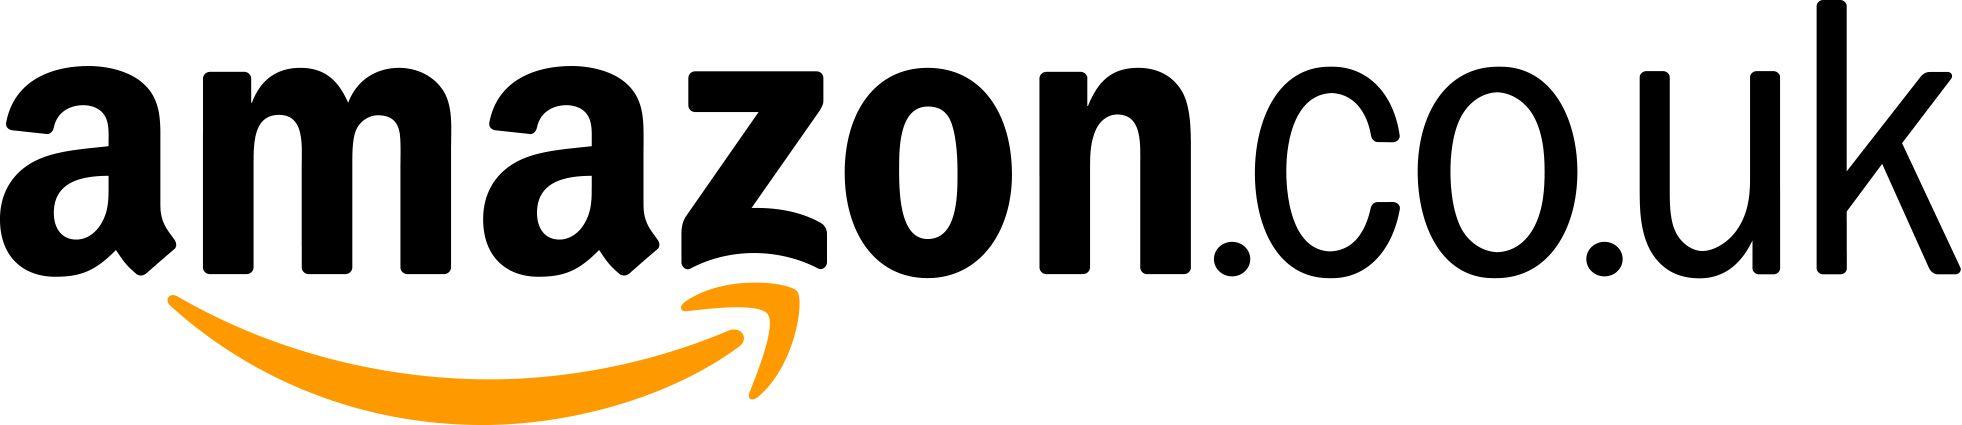 Amazon Co UK Logo - Images - Logos